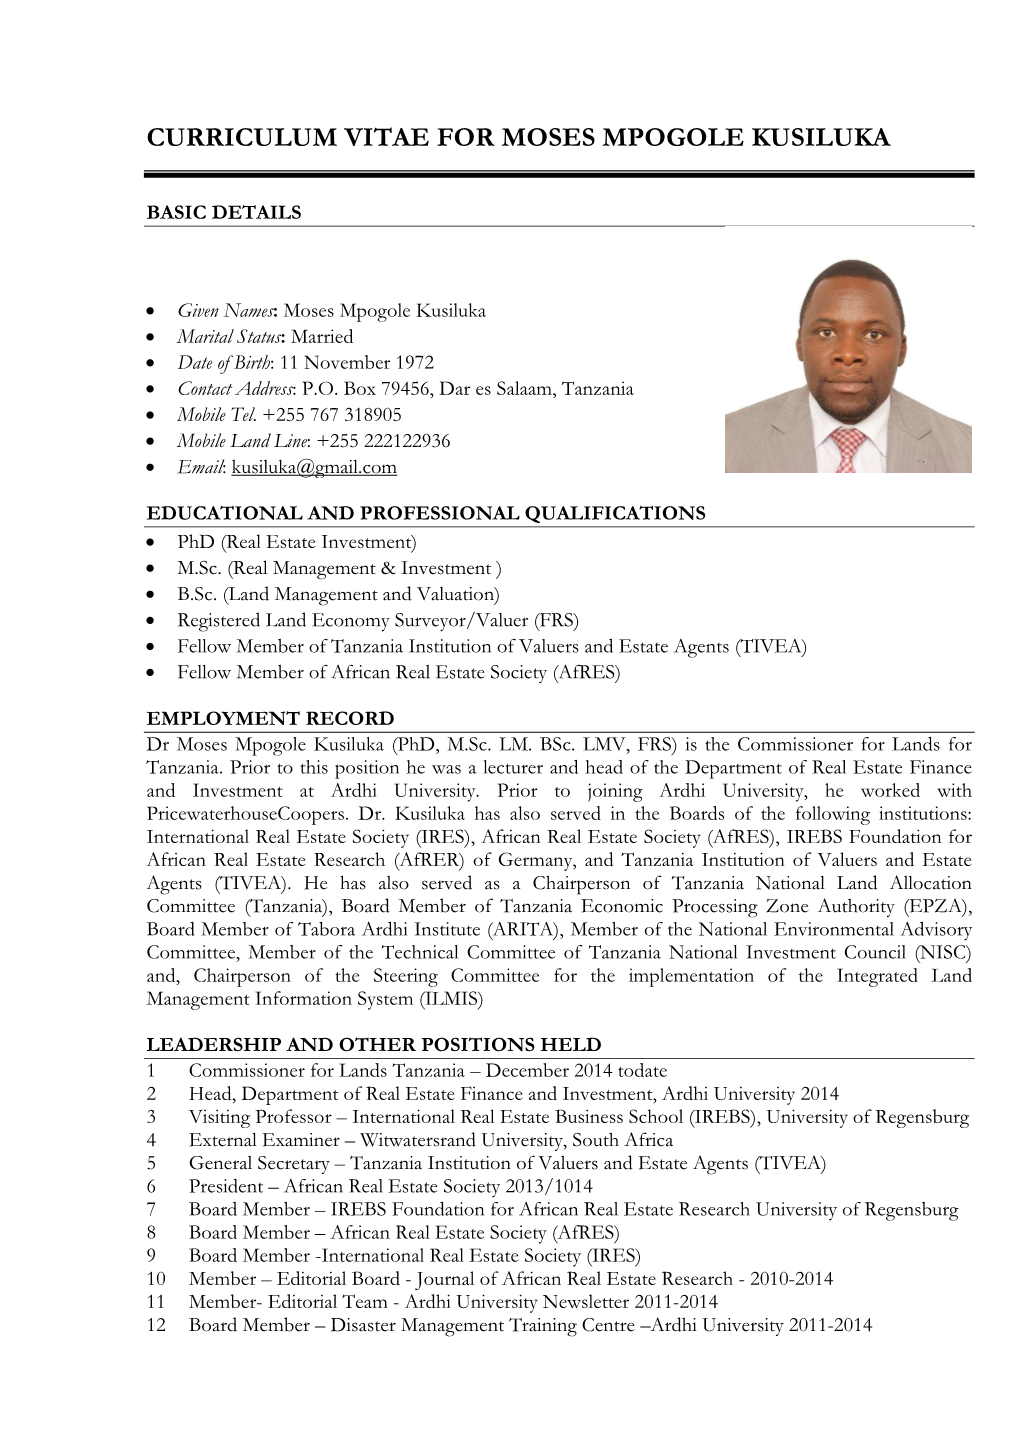 Curriculum Vitae for Moses Mpogole Kusiluka